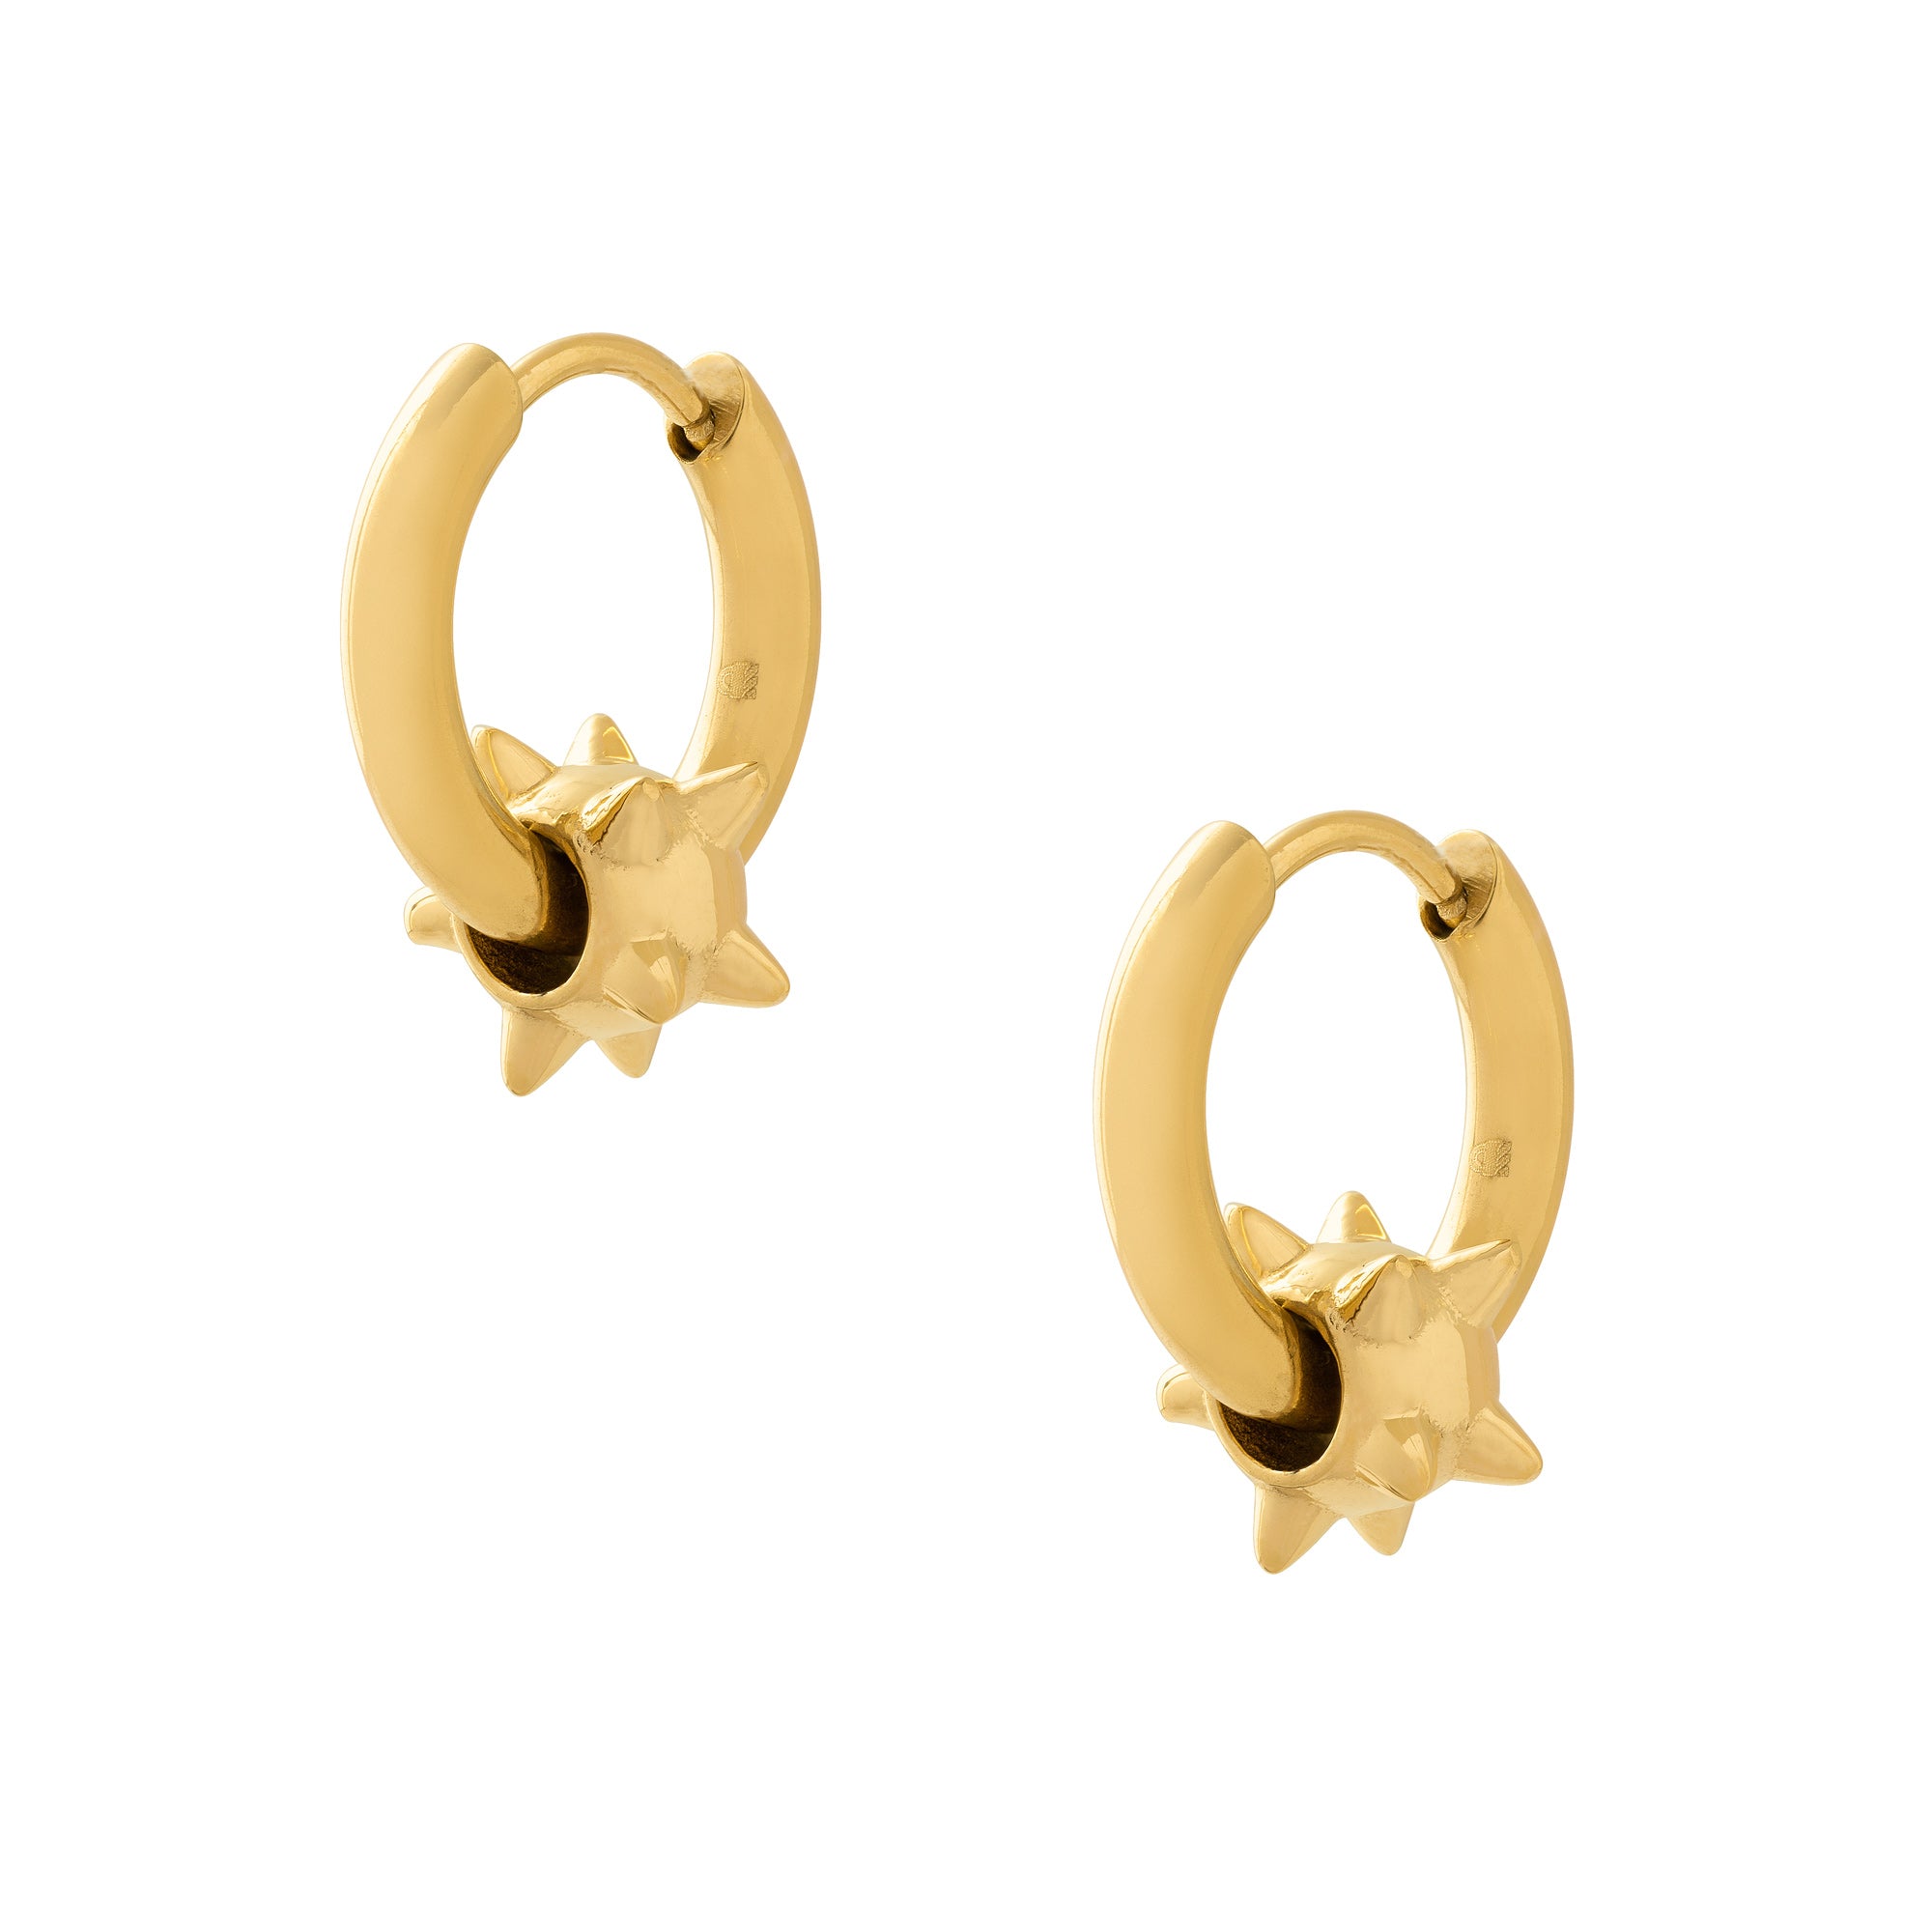 Gold spiked ball hoop earrings for men